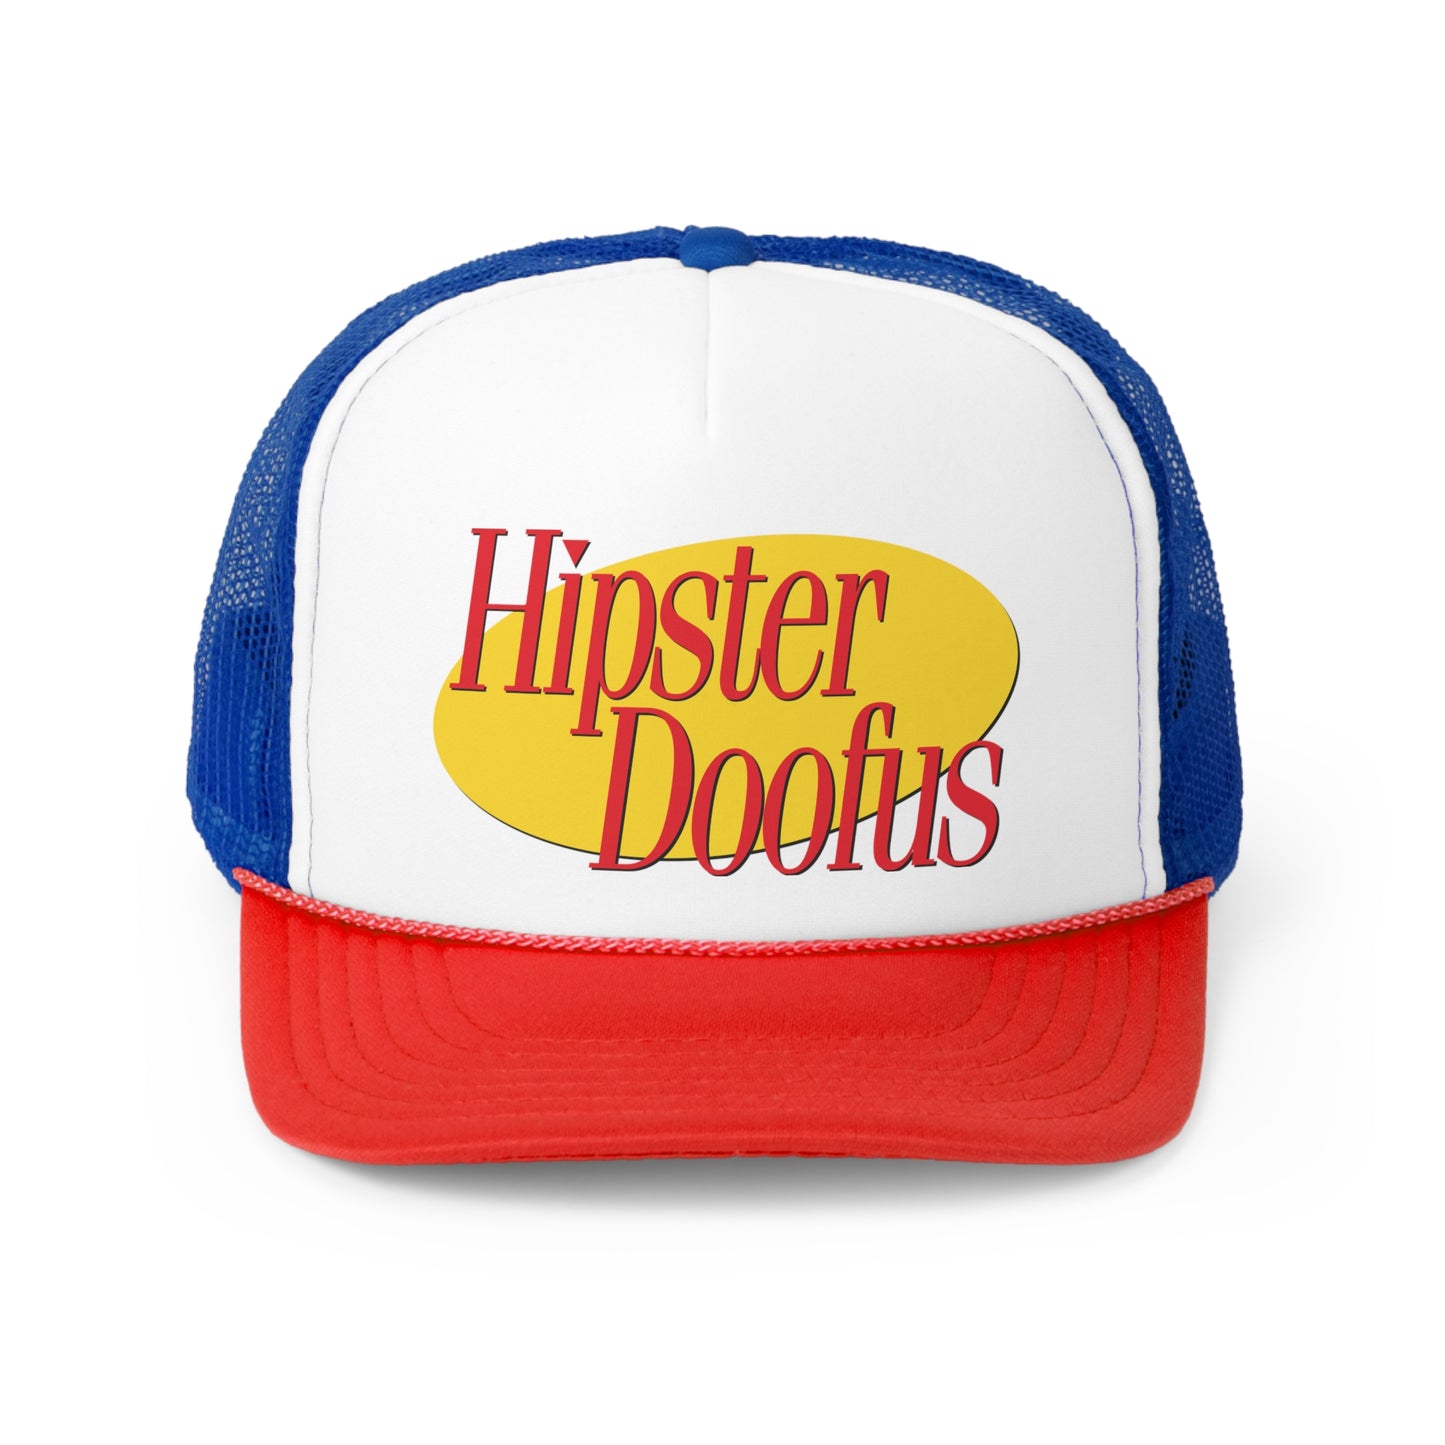 Hipster Doofus trucker hat